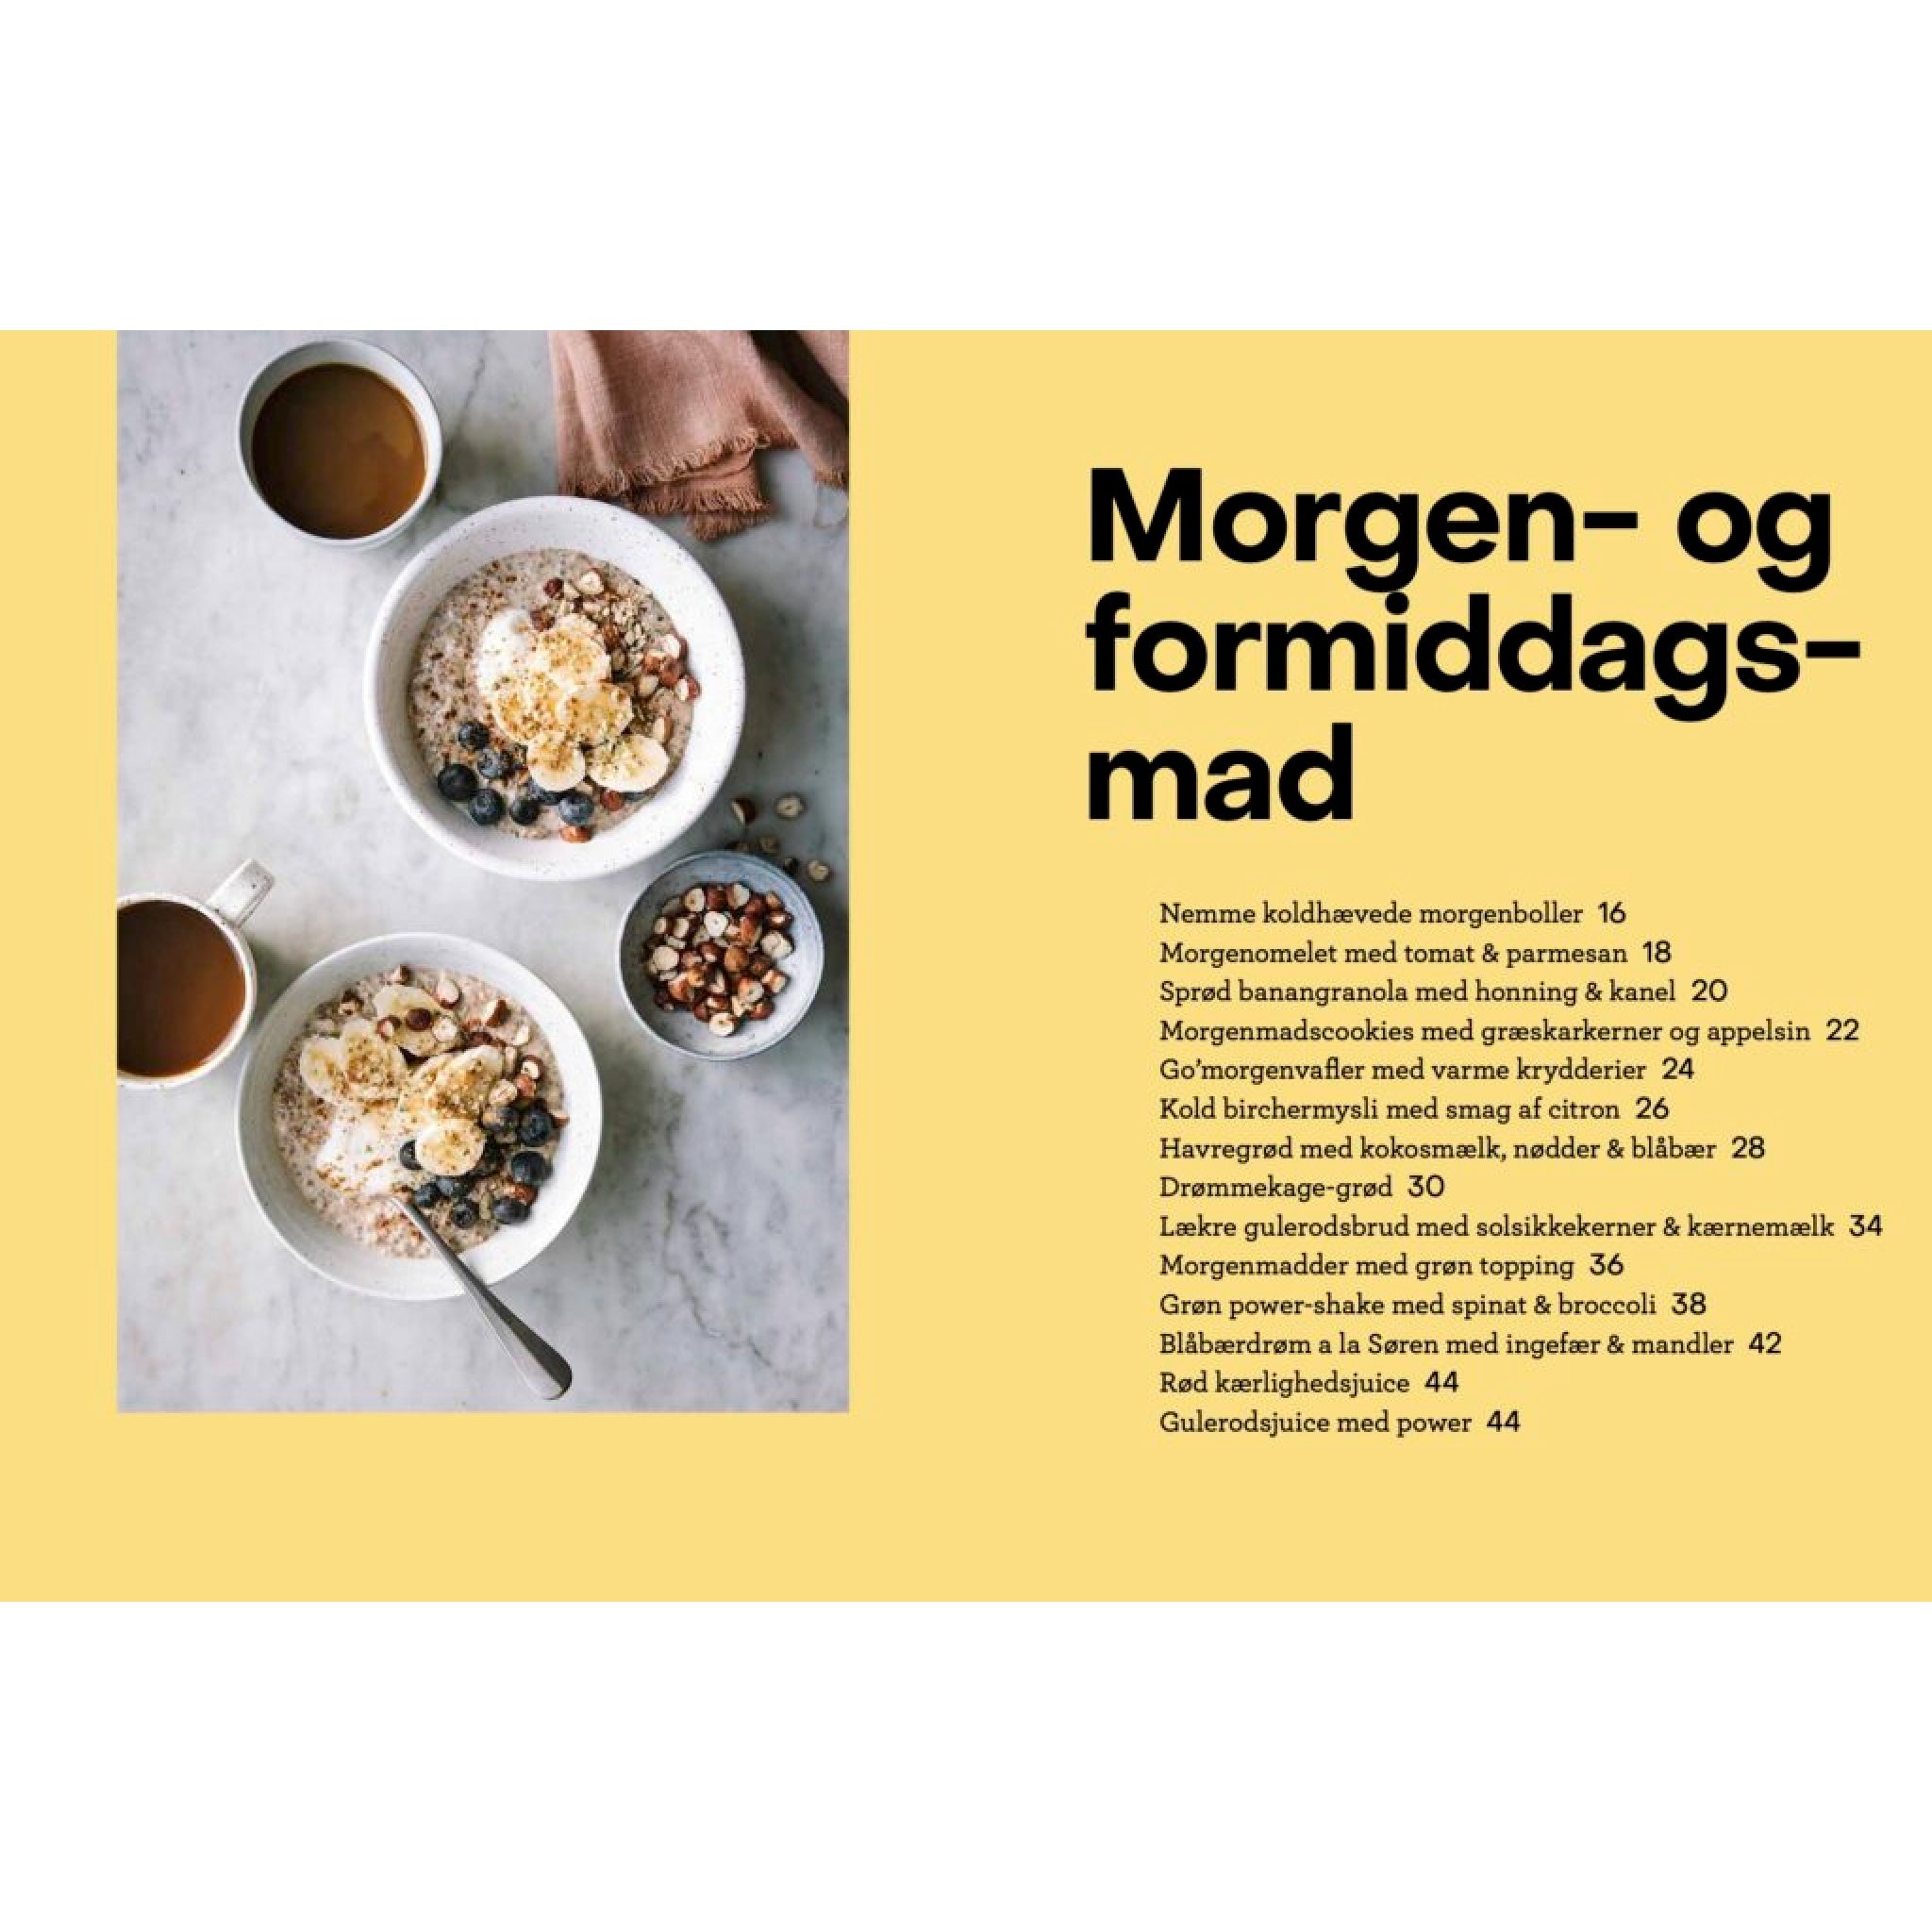 Kost og kræft, opskrifter på morgenmad- og formiddagsmad, kogebog af Ditte Ingemann, Oliviers & Co